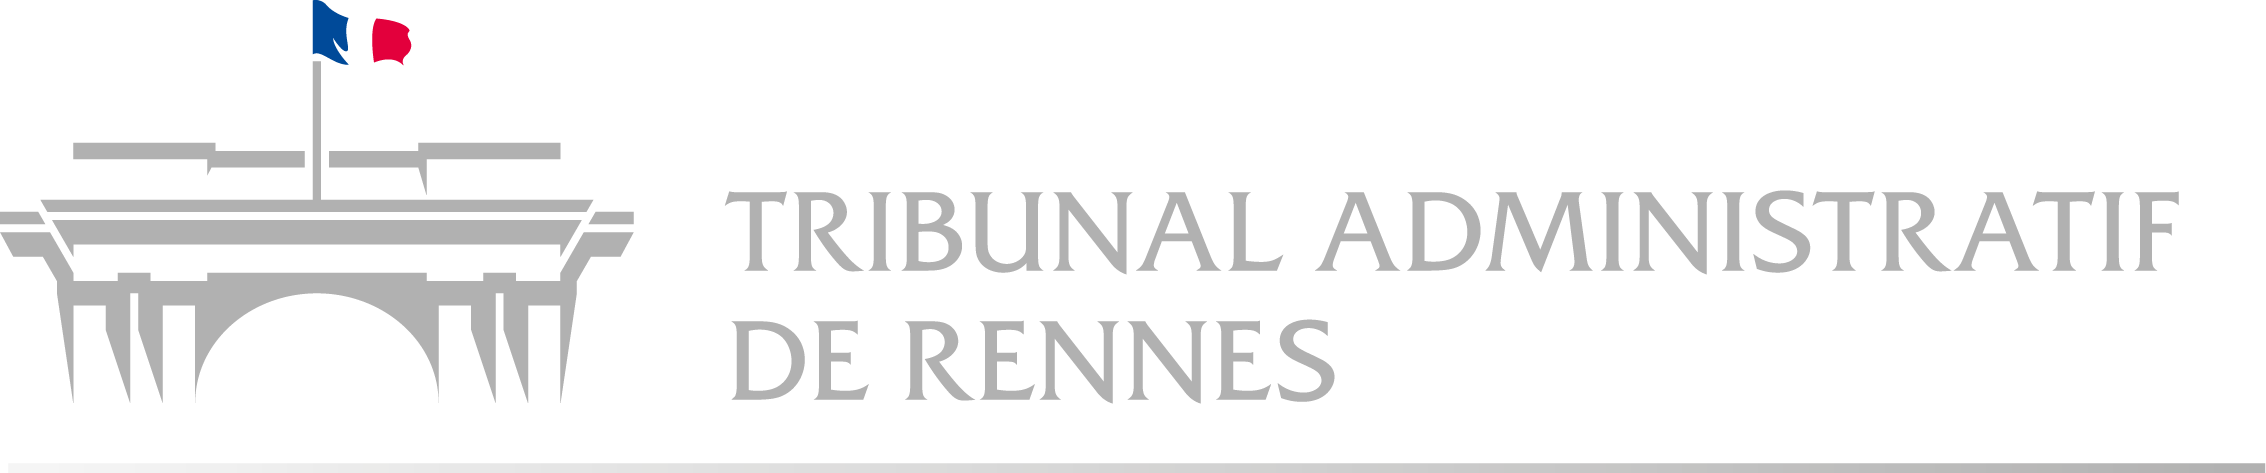 Tribunal administratif de Rennes - Retour à l'accueil